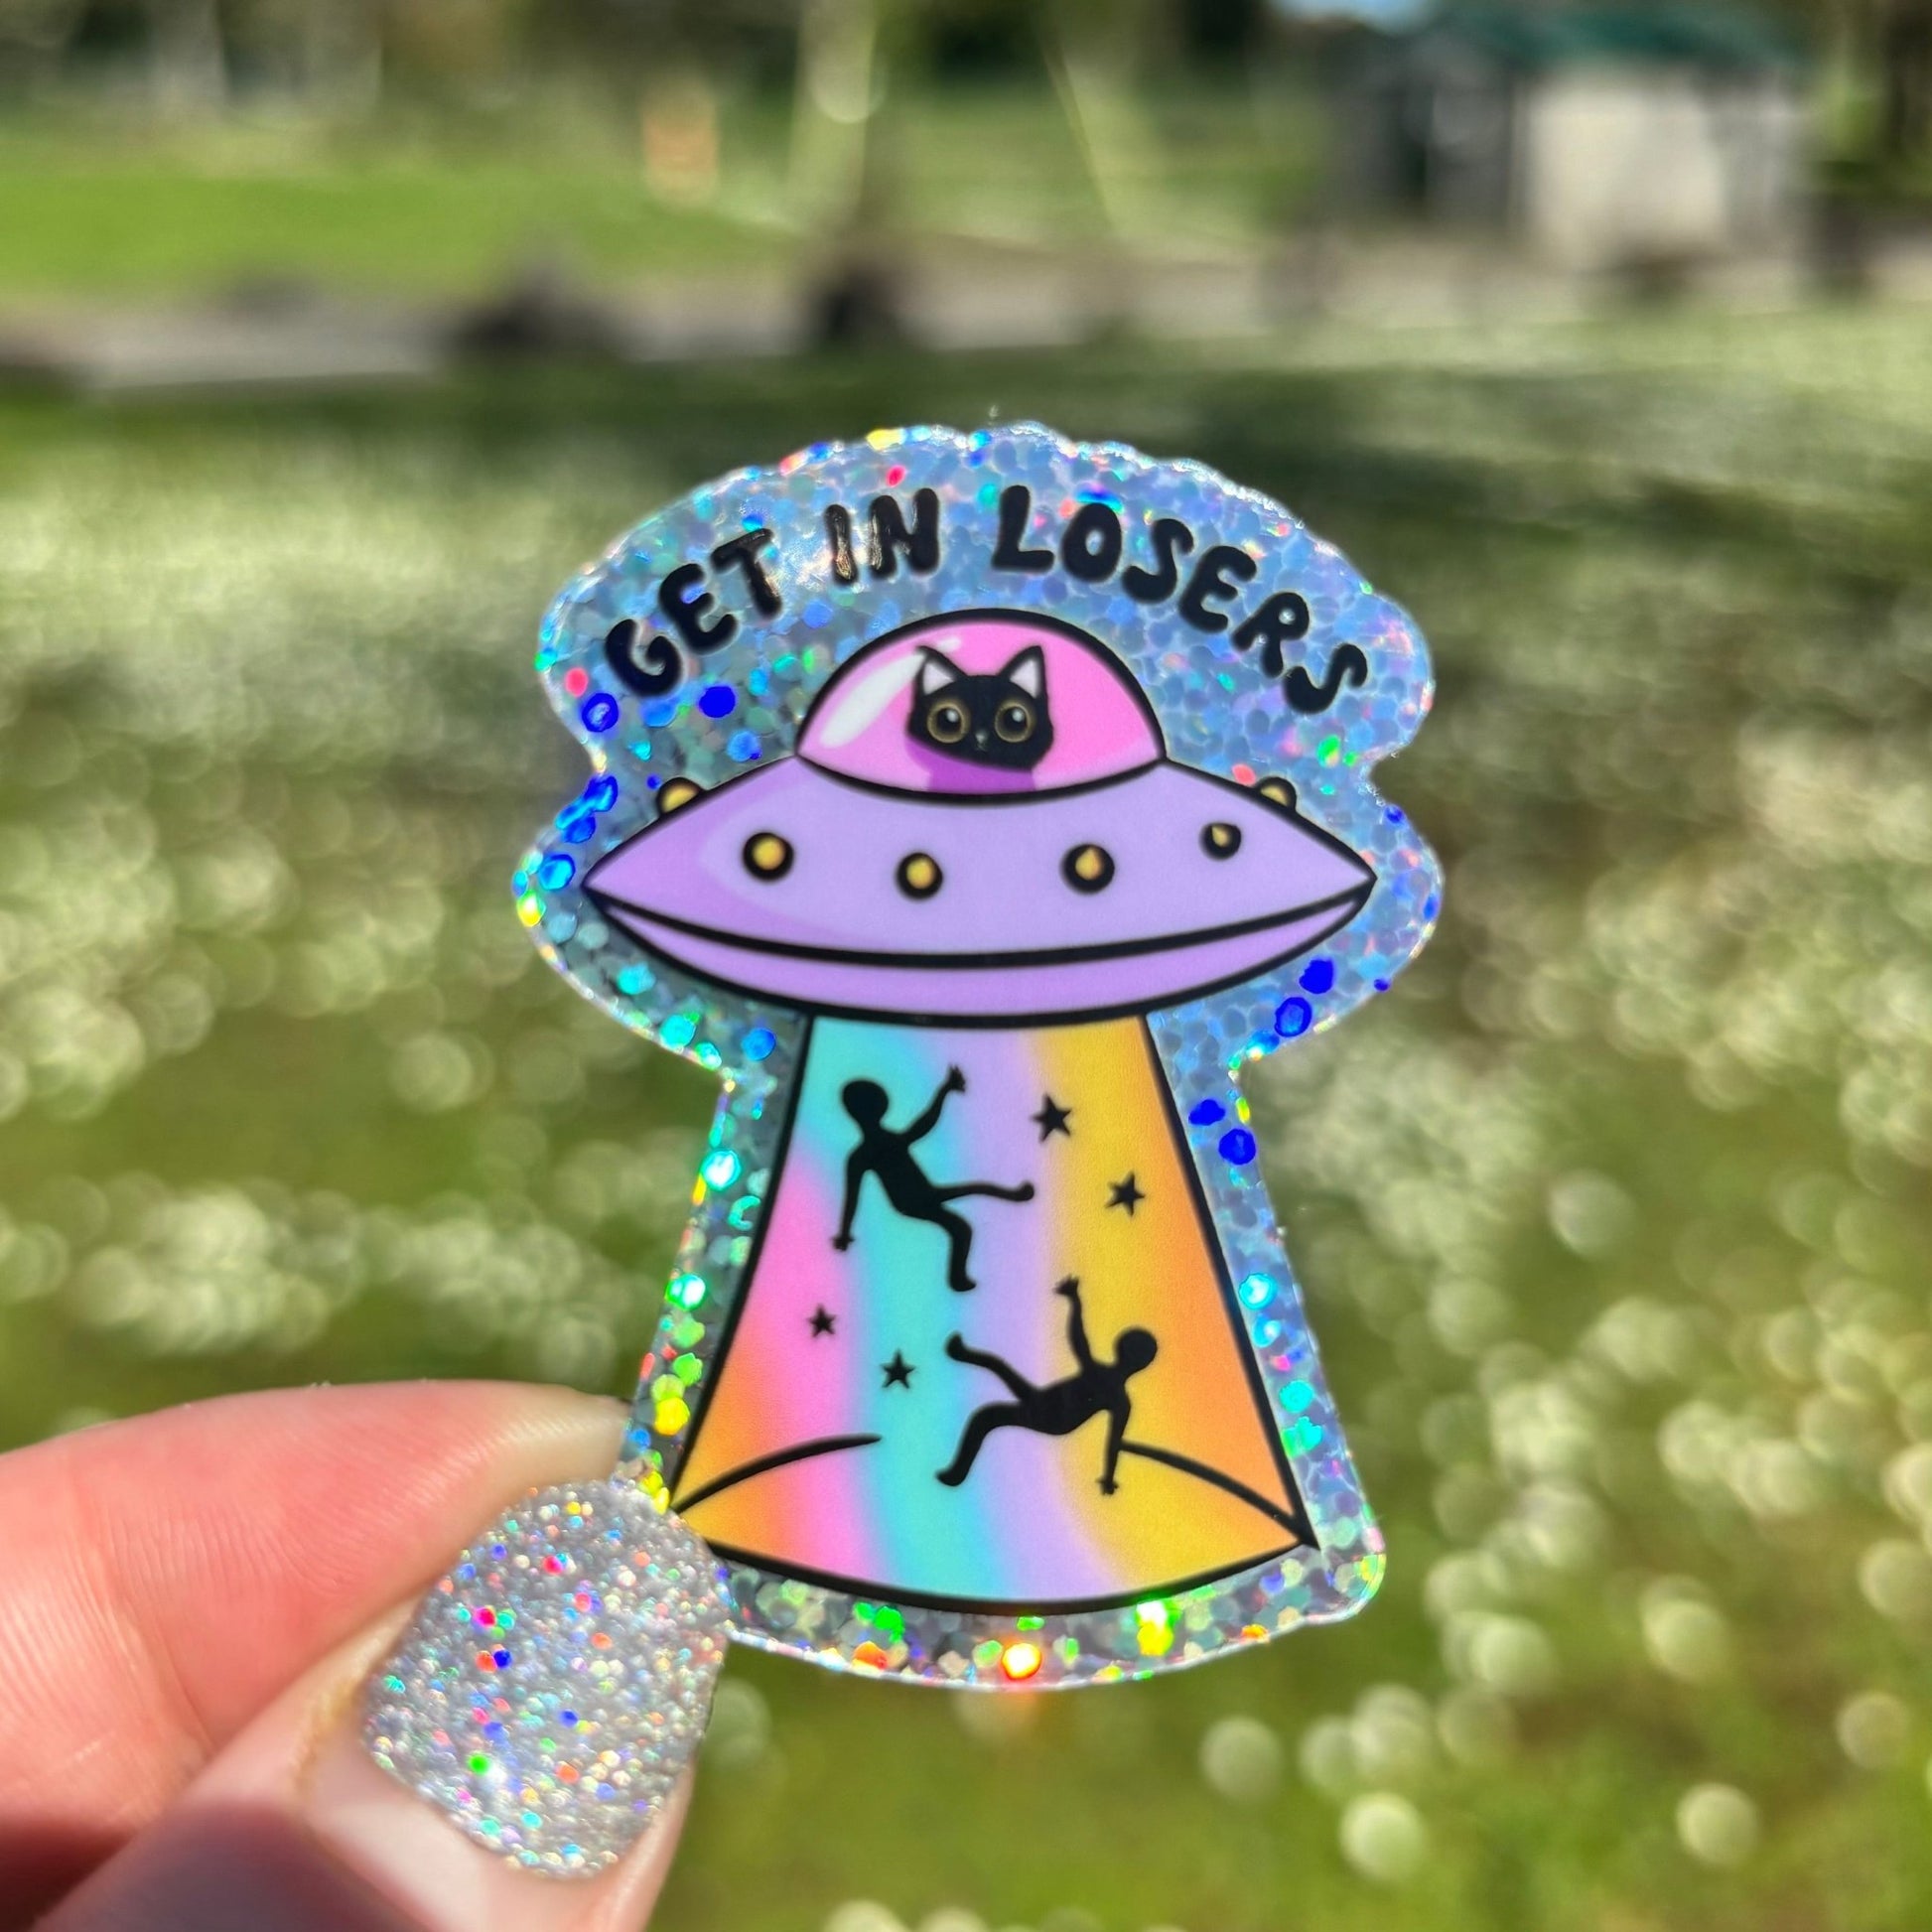 Get in Loser Cat UFO Sticker - Awfullynerdy.co